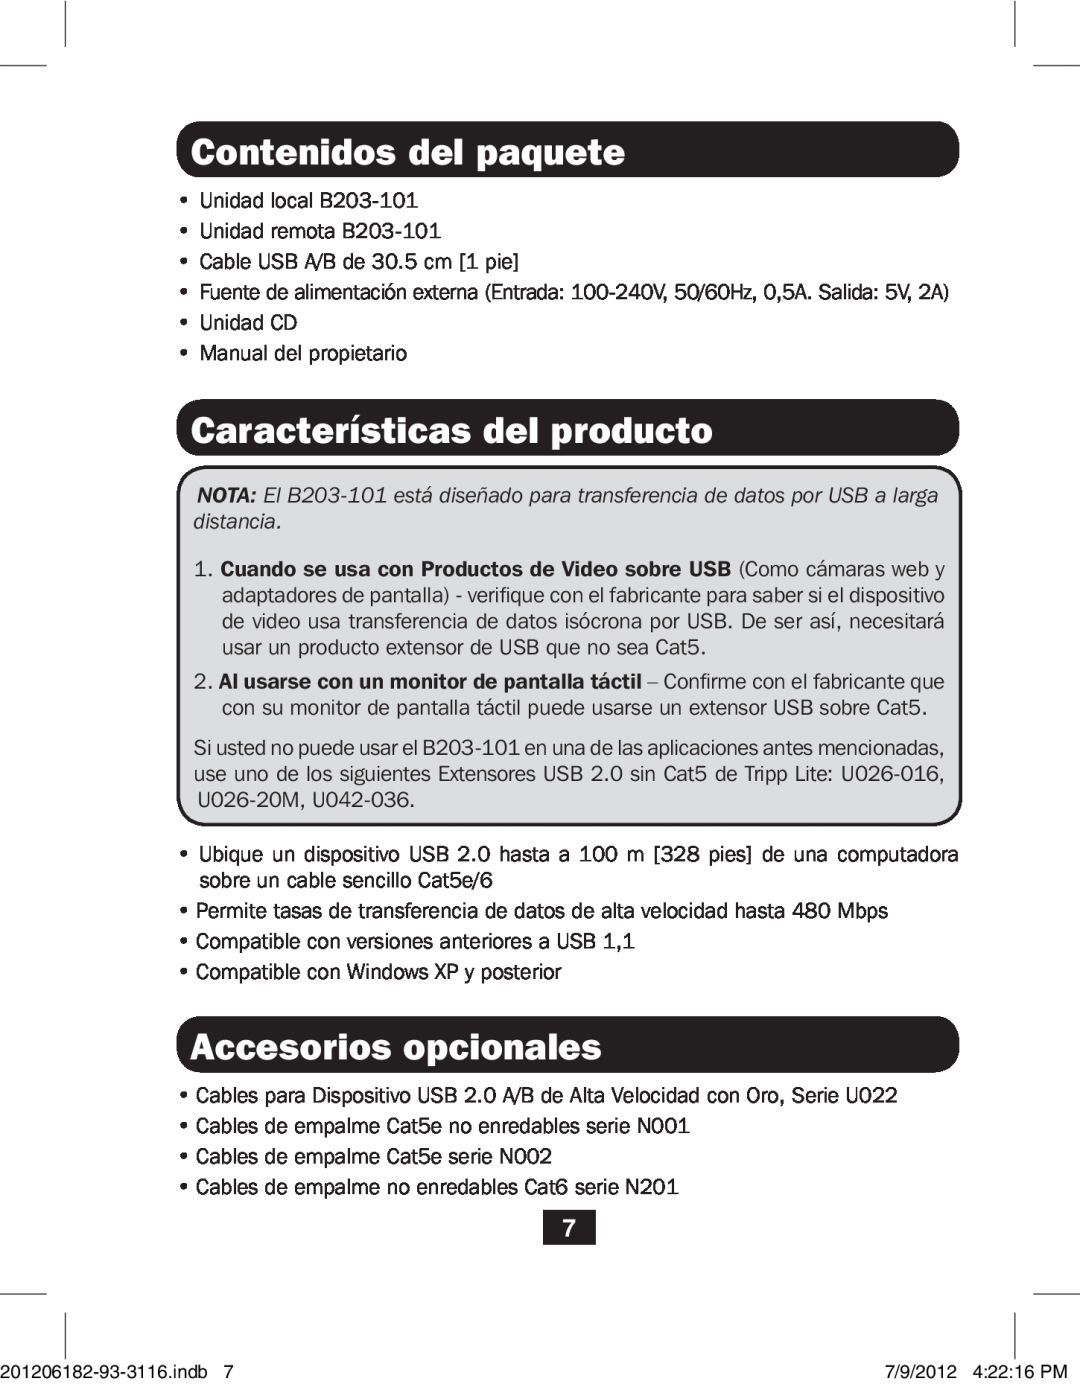 Tripp Lite B203-101 owner manual Contenidos del paquete, Características del producto, Accesorios opcionales 